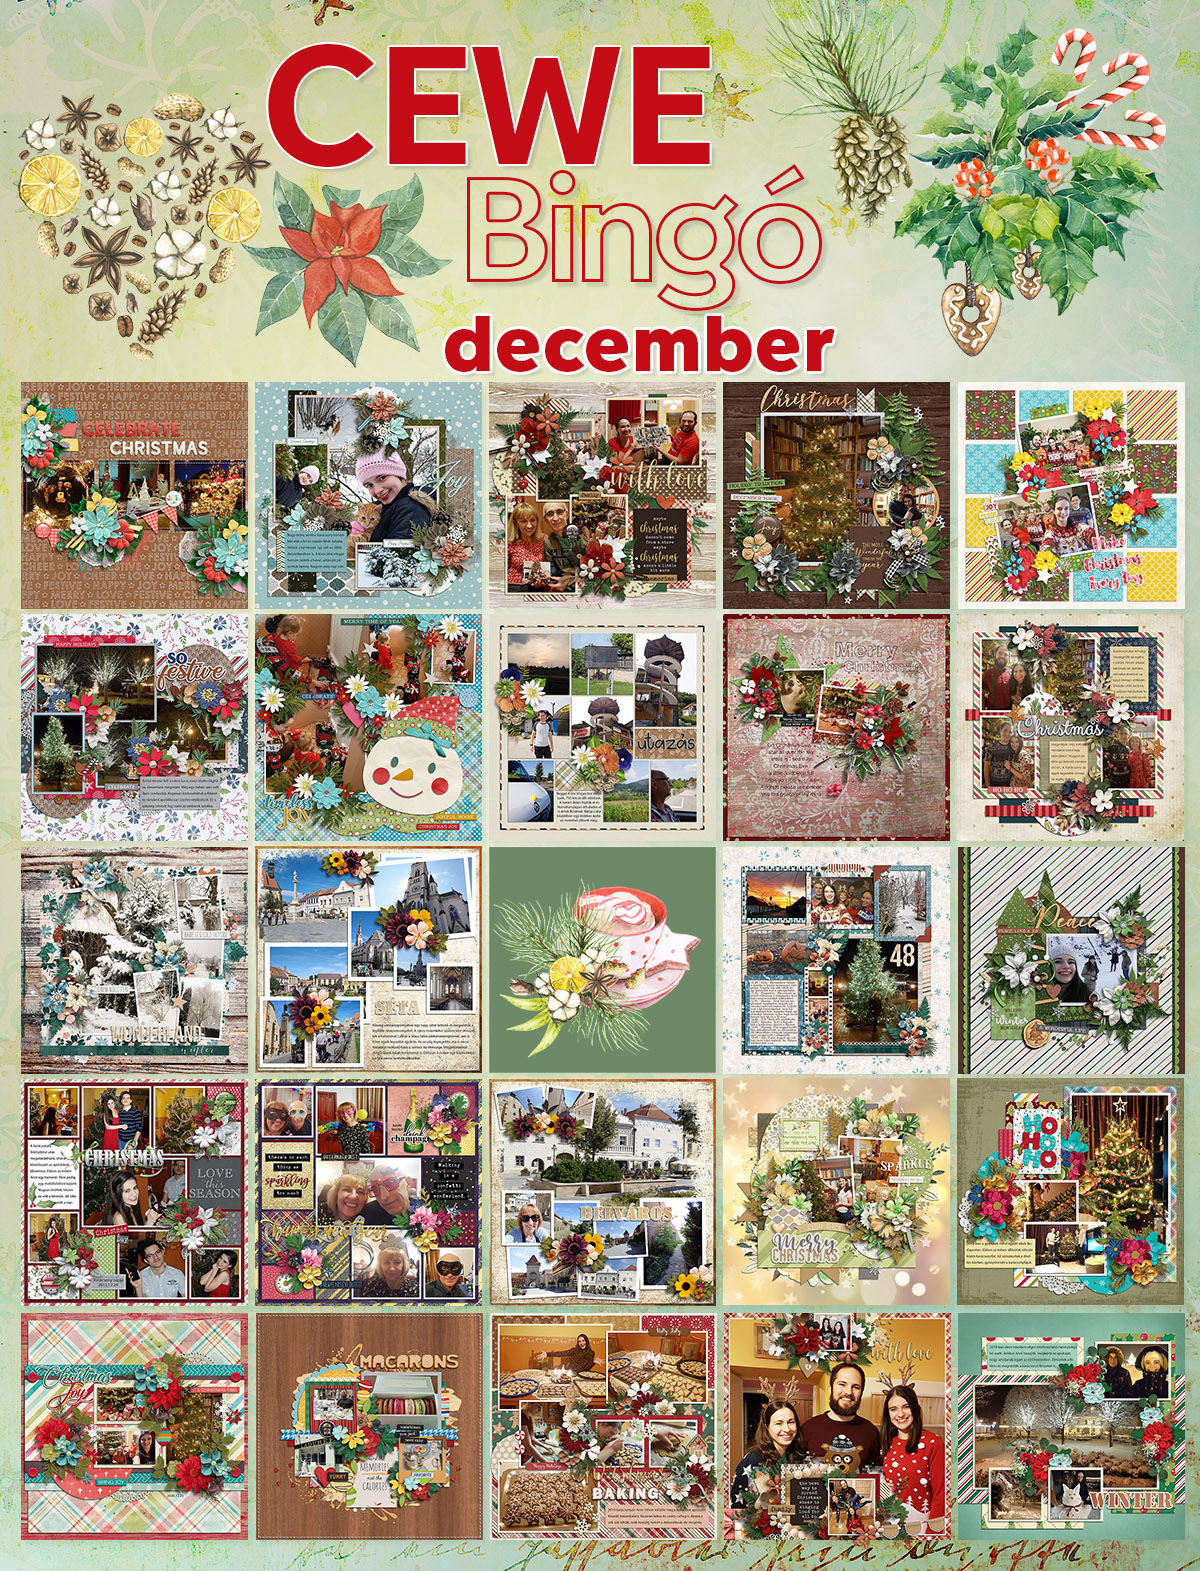 Decemberi bingó